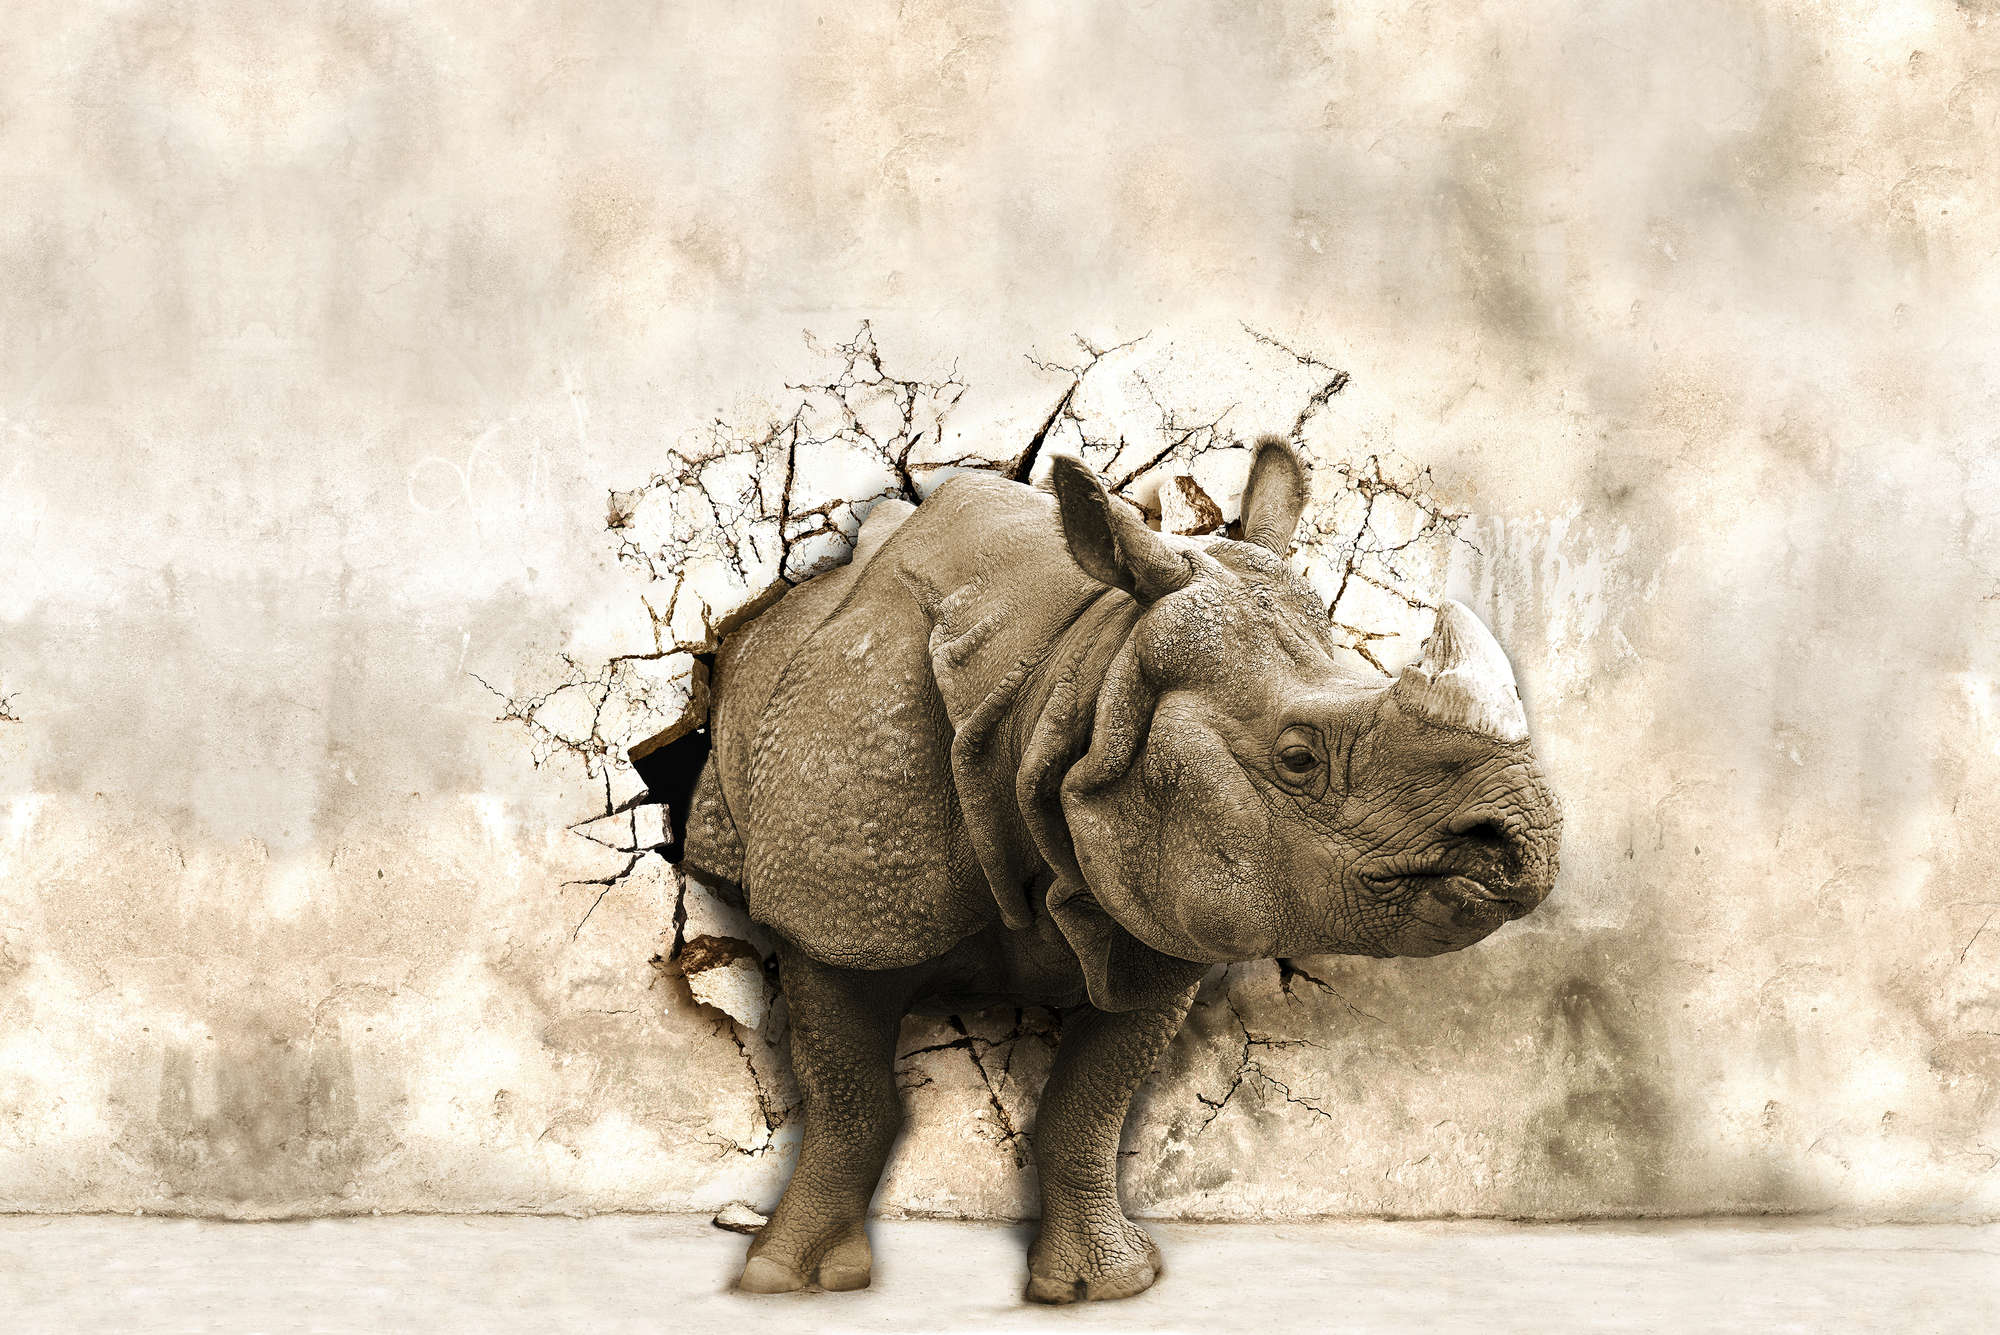             Papel pintable Avance Animal con Rhino - Material sin tejer texturizado
        